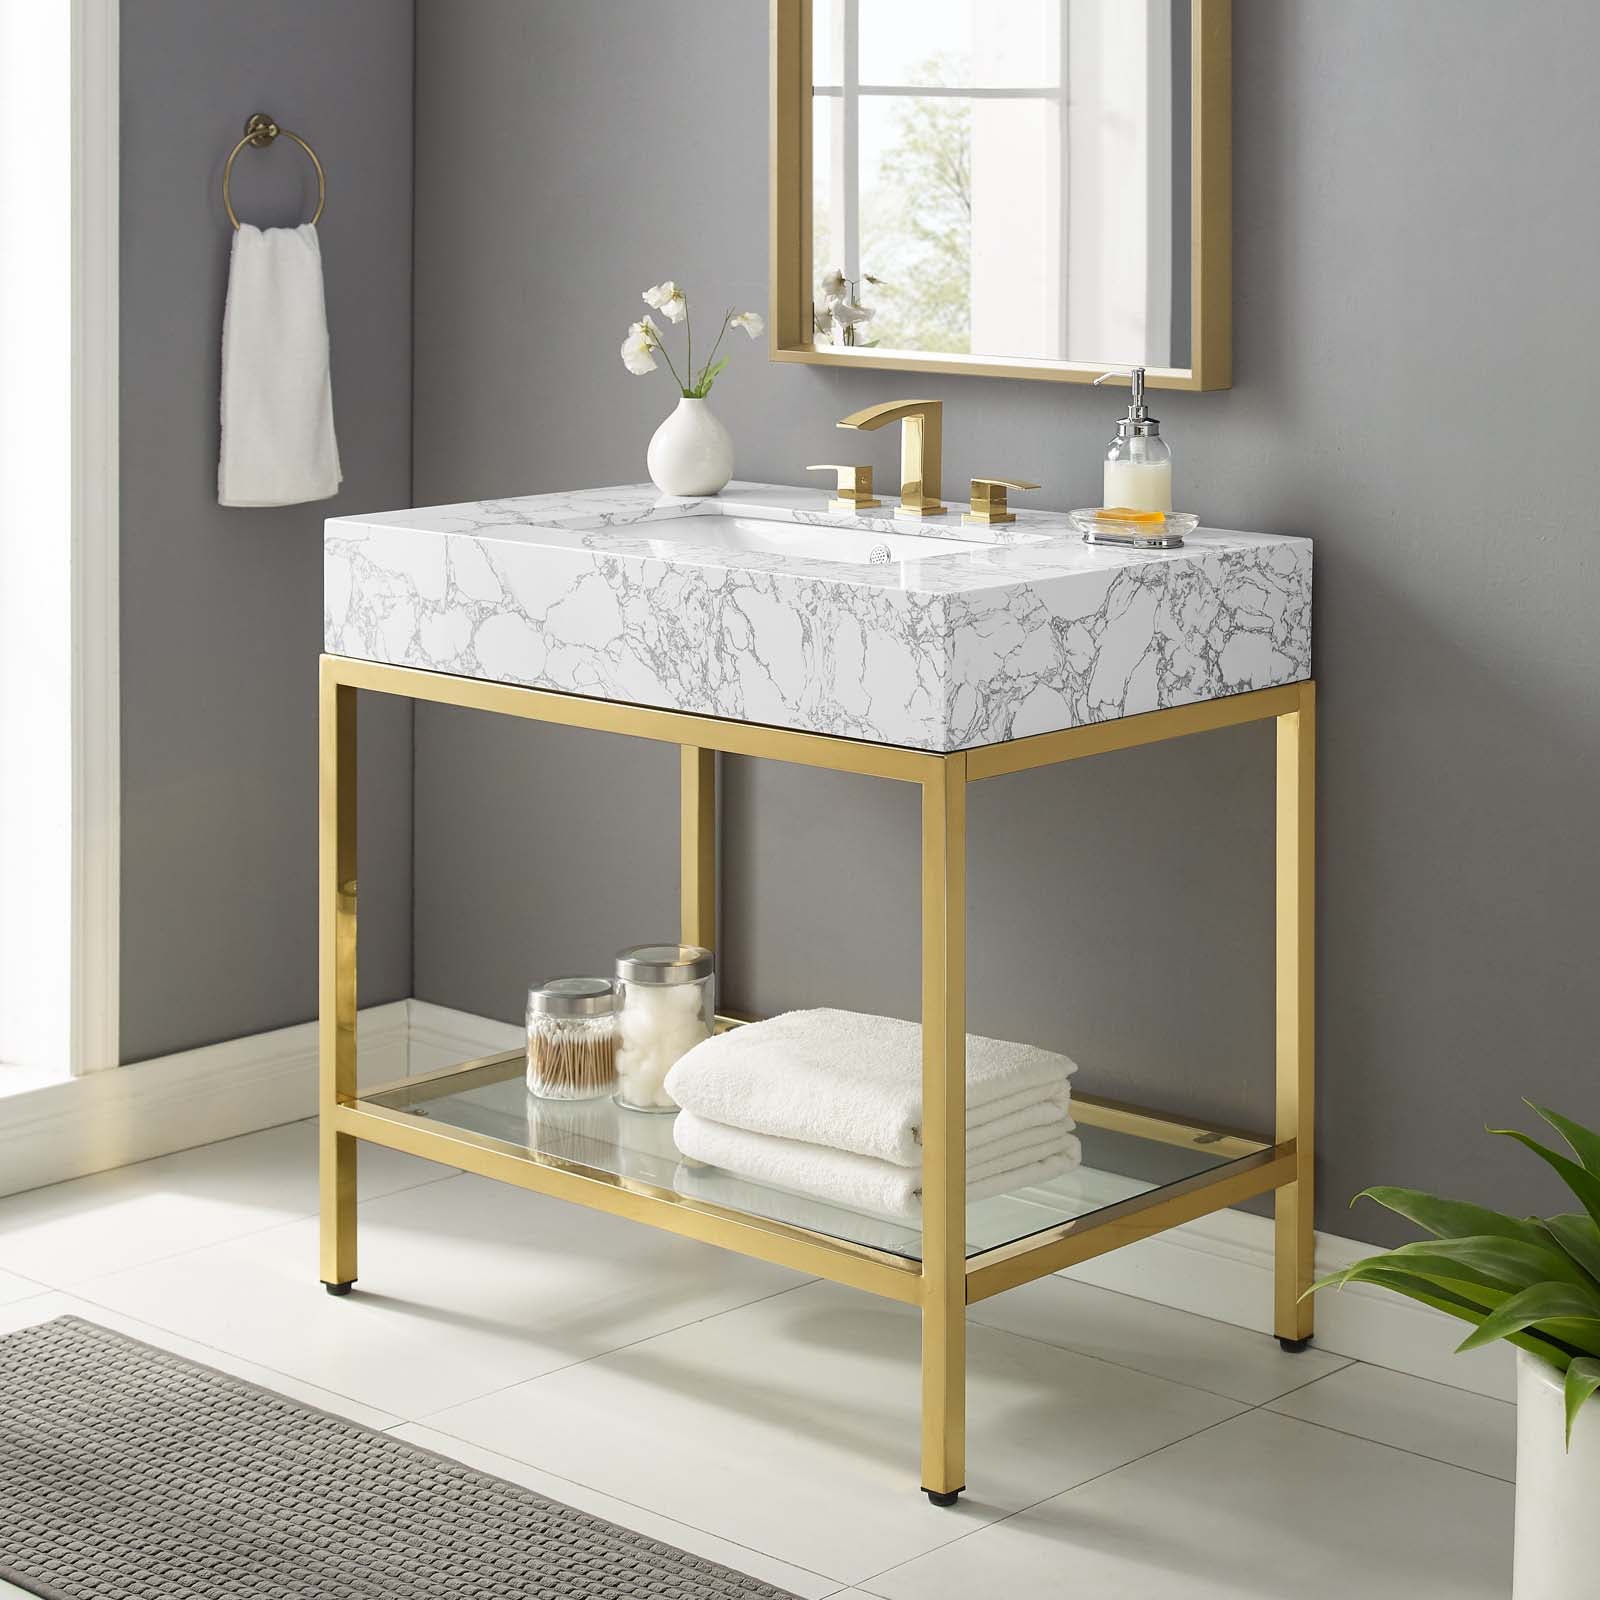 Kingsley 36" Gold Stainless Steel Bathroom Vanity